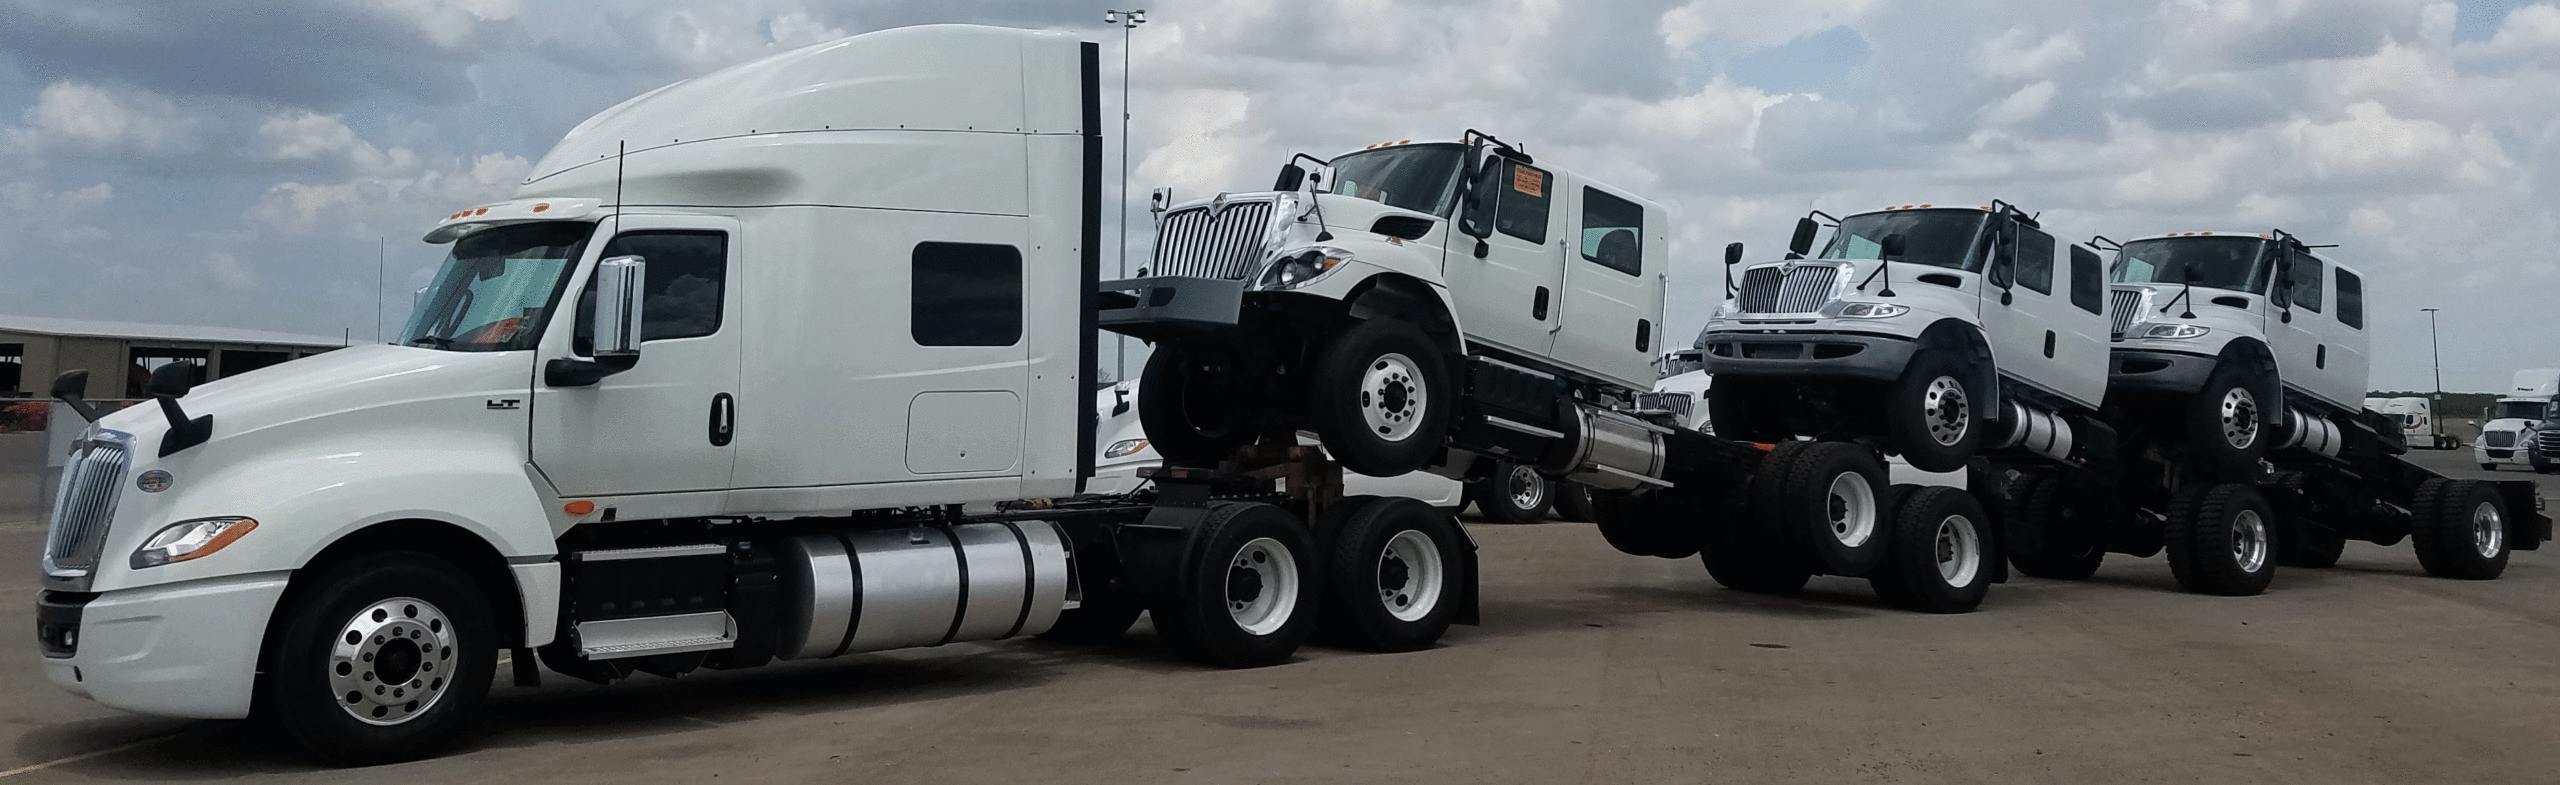 How to Piggyback Semi Trucks